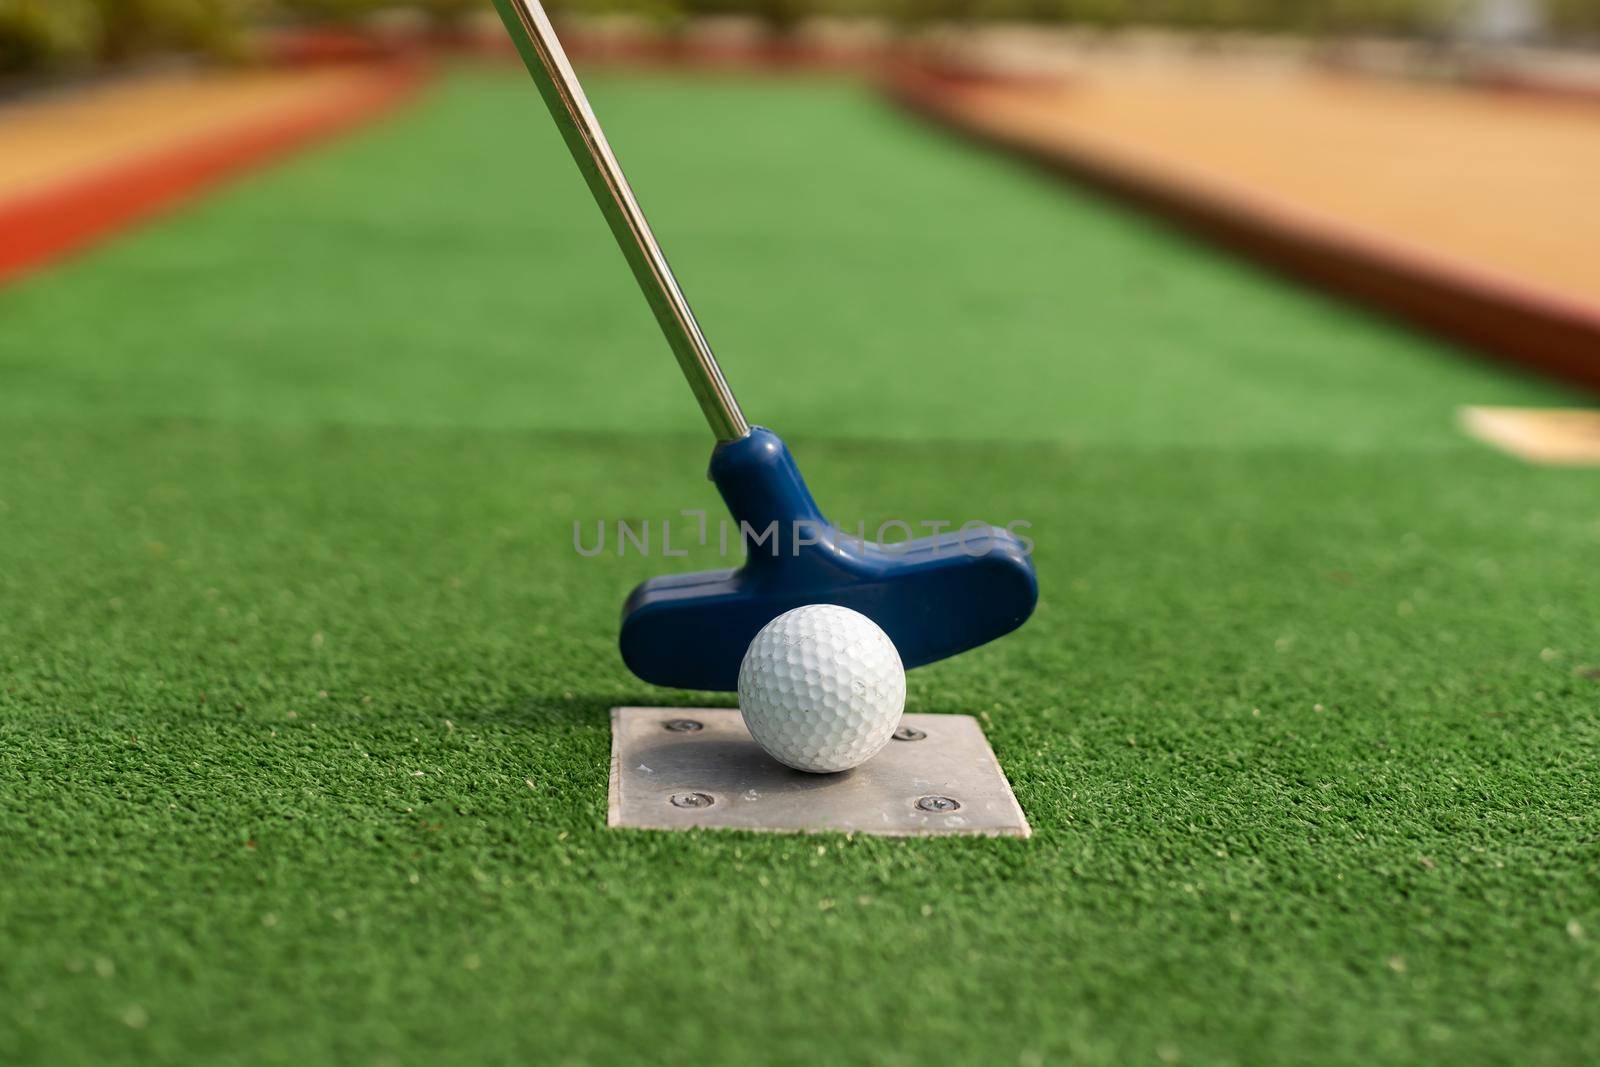 A club prepares to hit a ball during a mini golf game.